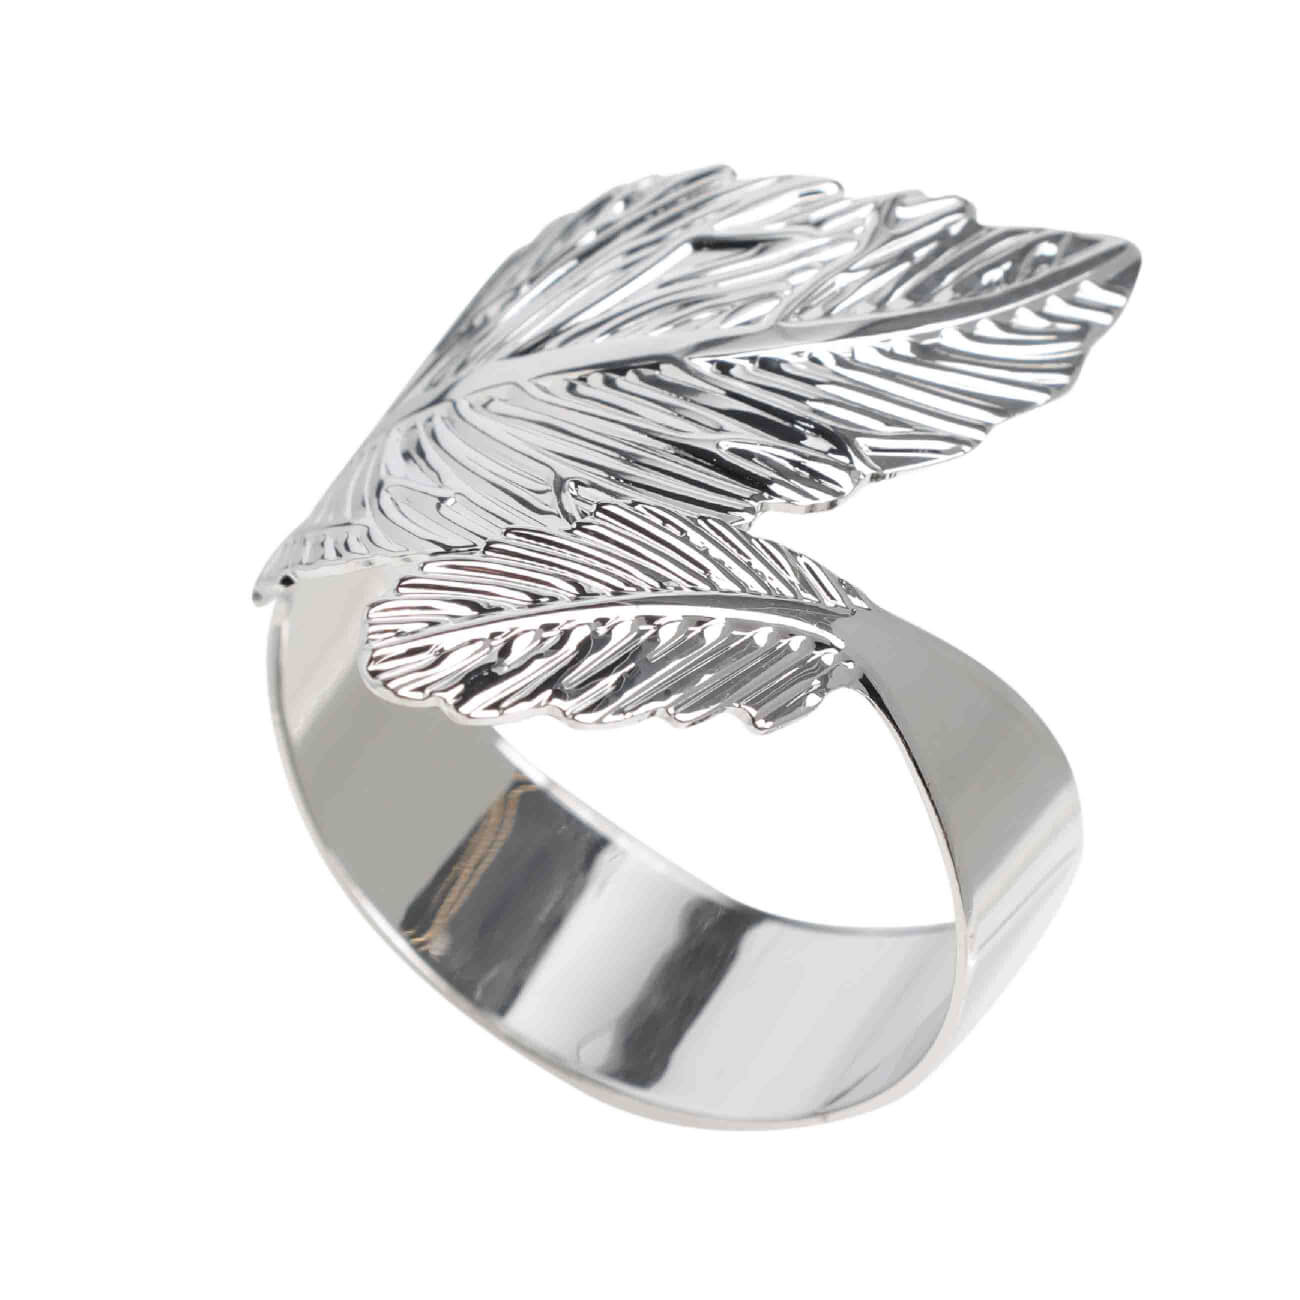 Кольцо для салфеток, 5 см, металл, серебристое, Листья, Print кольцо